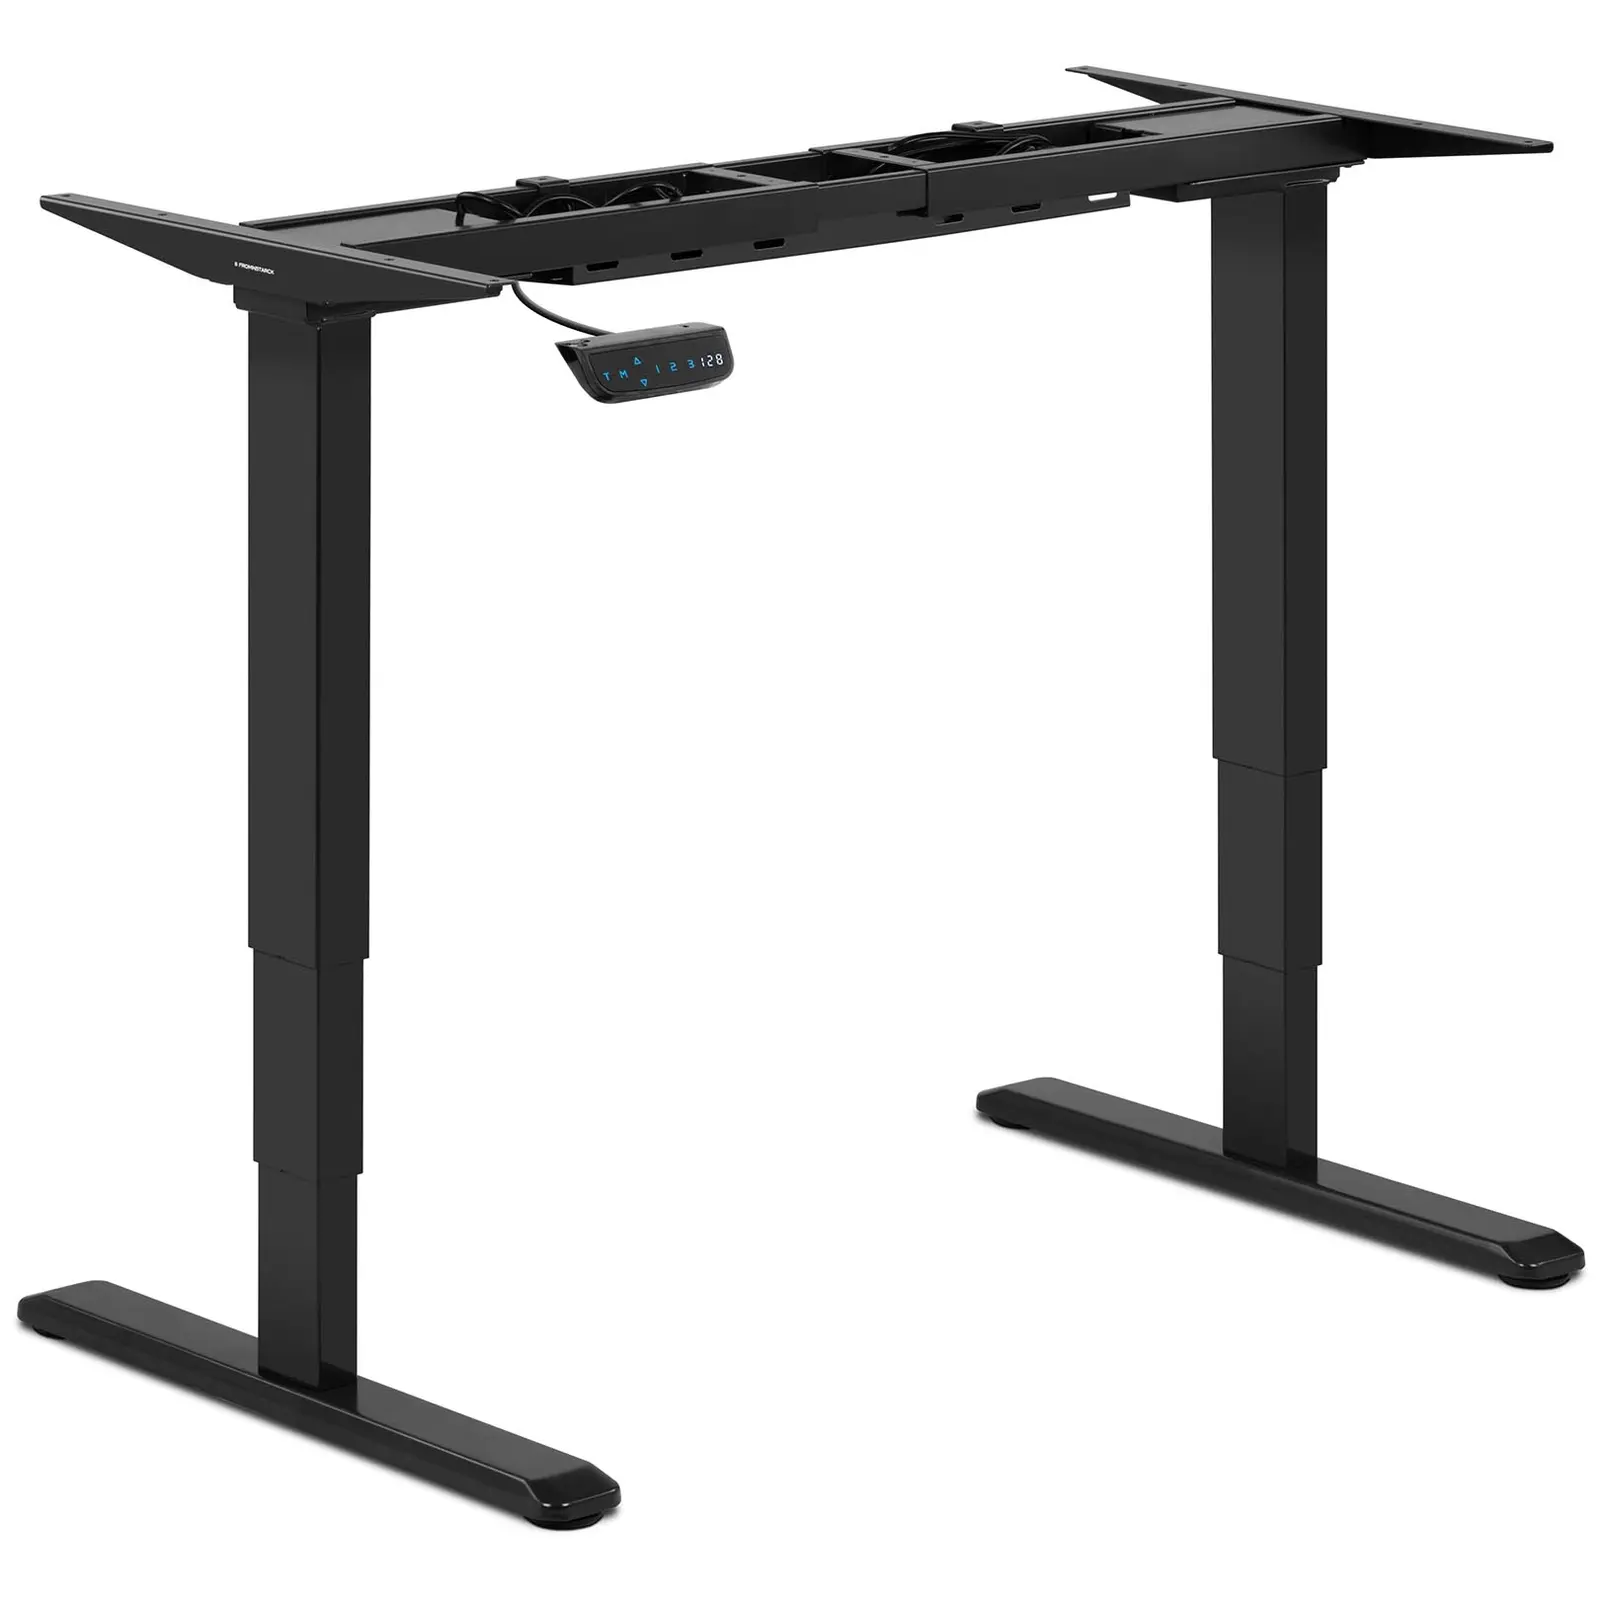 Supporto scrivania regolabile in altezza - 200 W- 125 kg - Nero